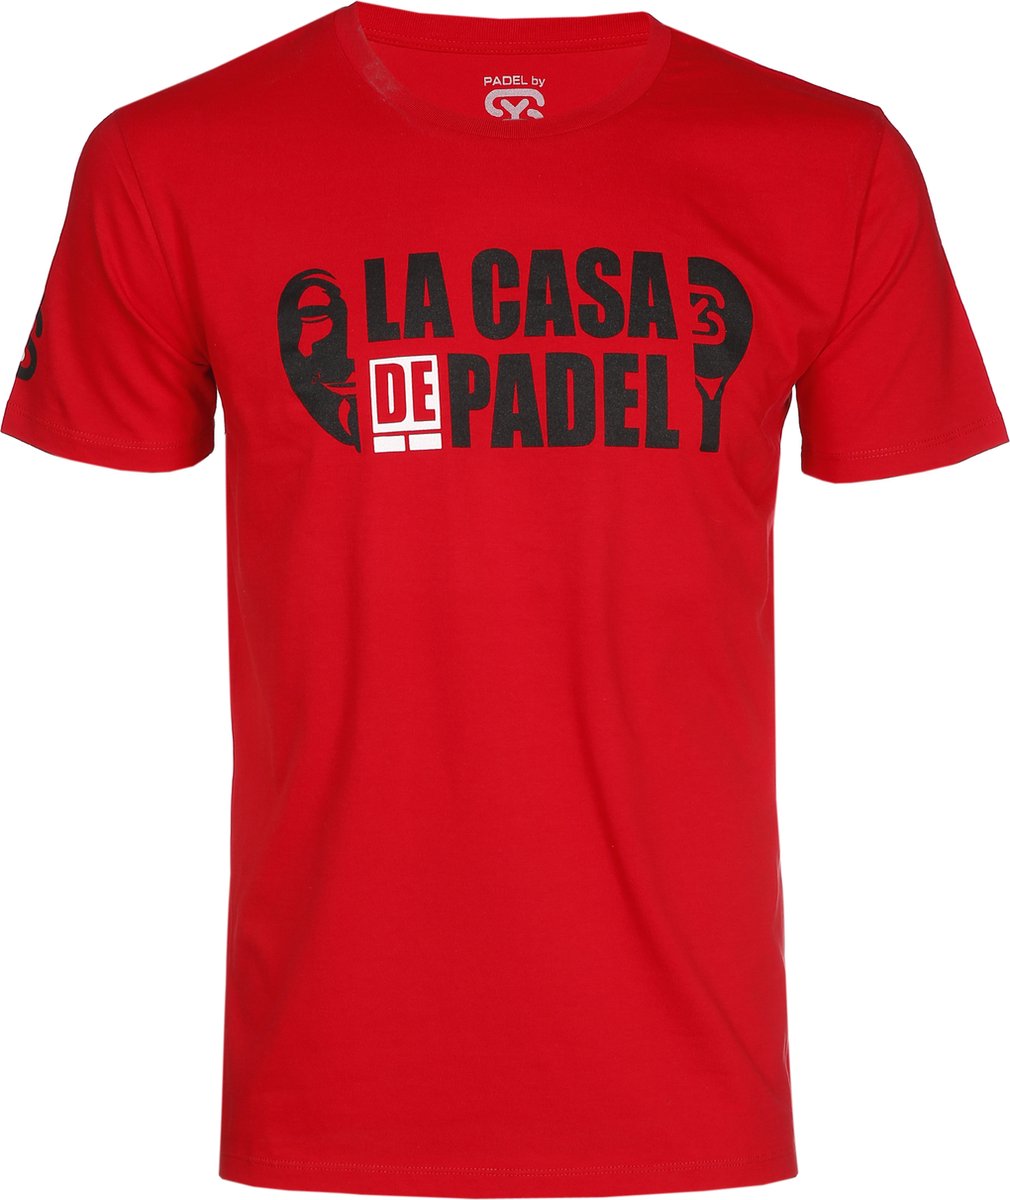 PADELbySY - PADEL - LA CASA DE PADEL - T-SHIRT MEN'S - RED - SIZE S